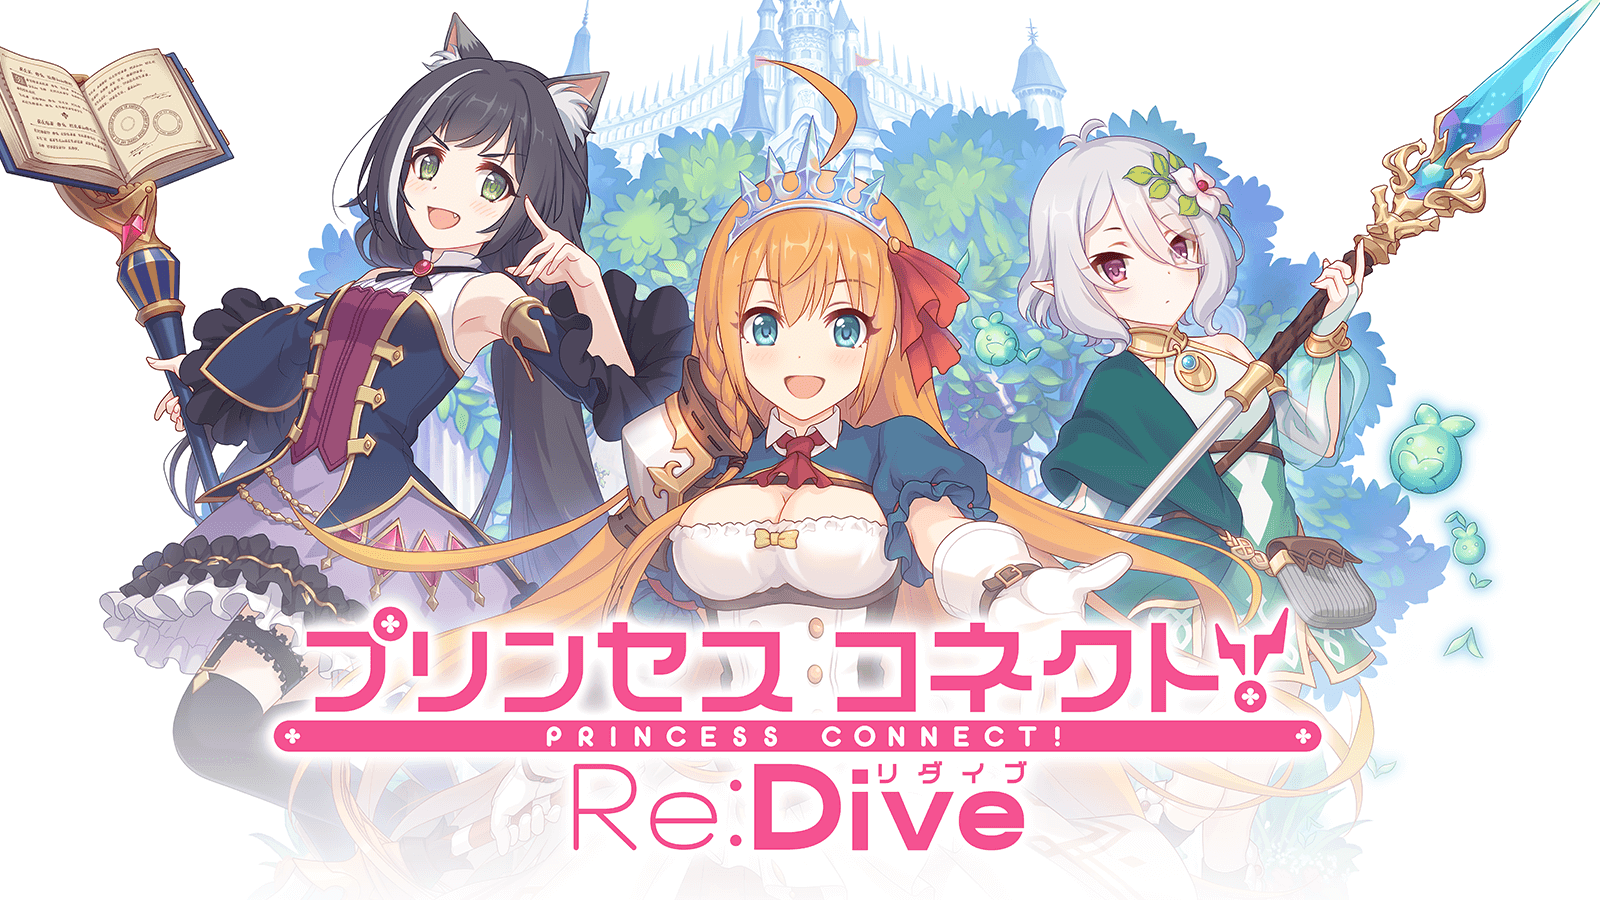 Princess Connect! Re:Dive anime